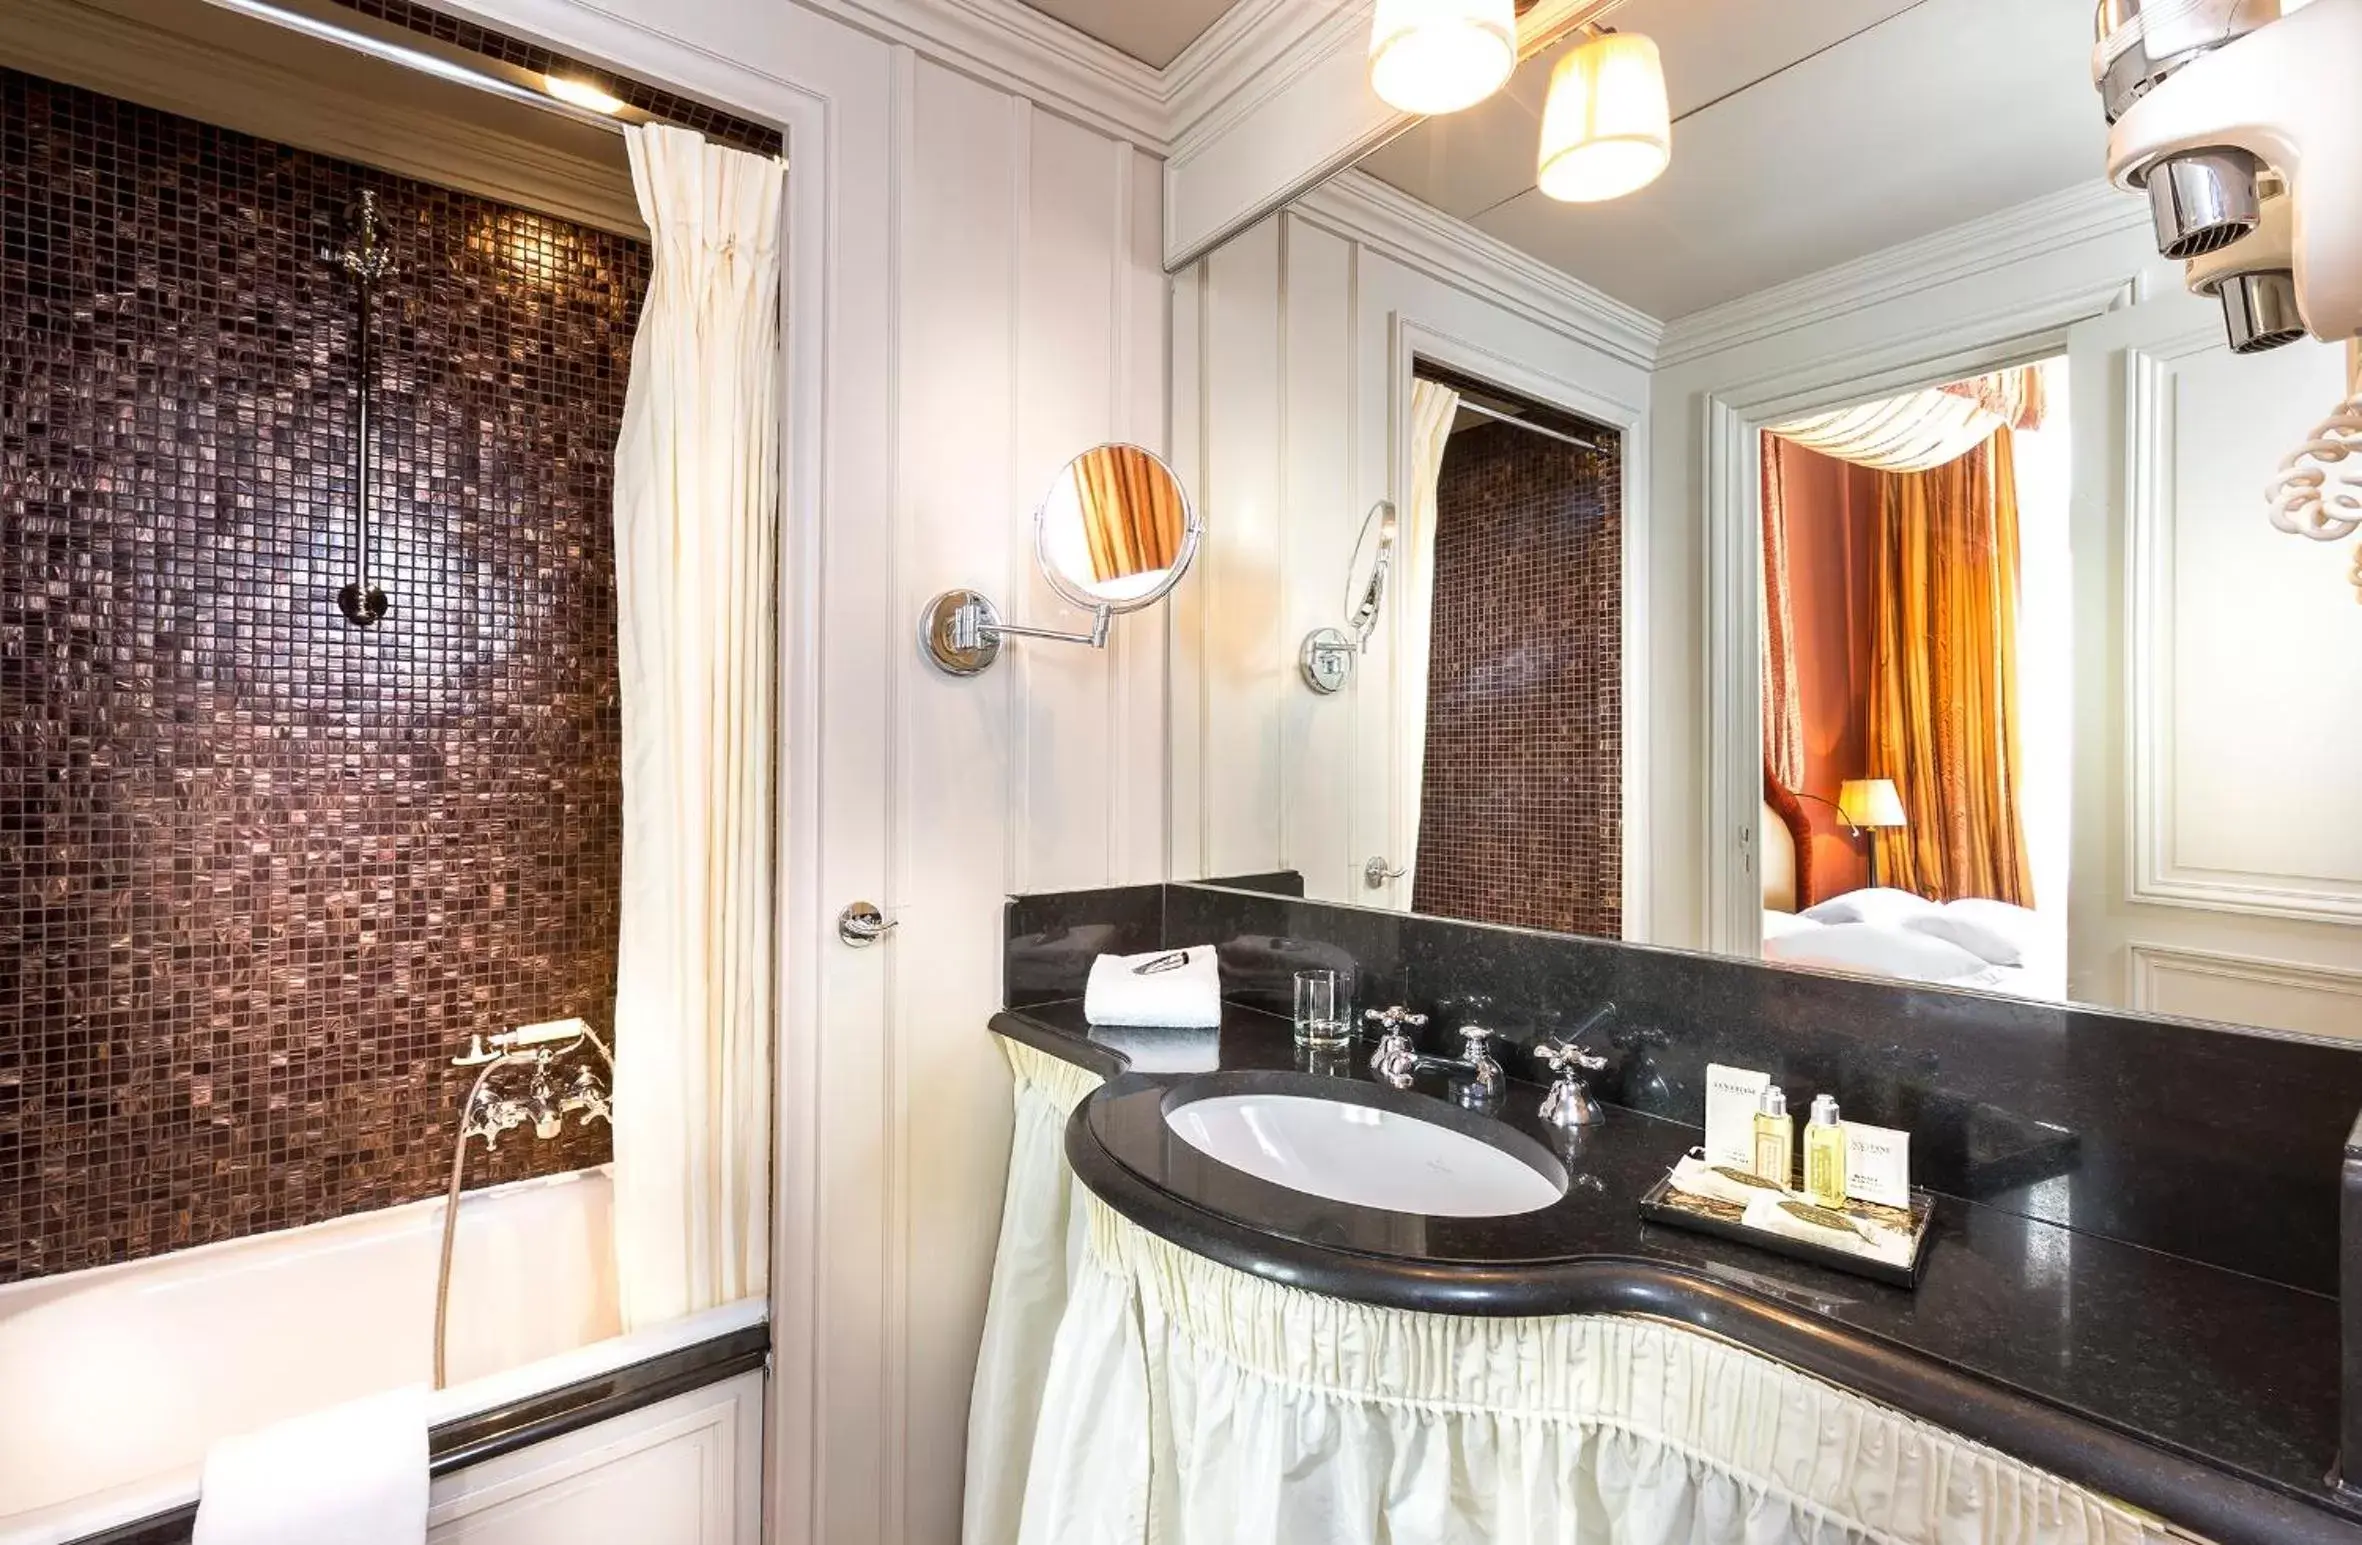 Bathroom in Hotel Odeon Saint Germain